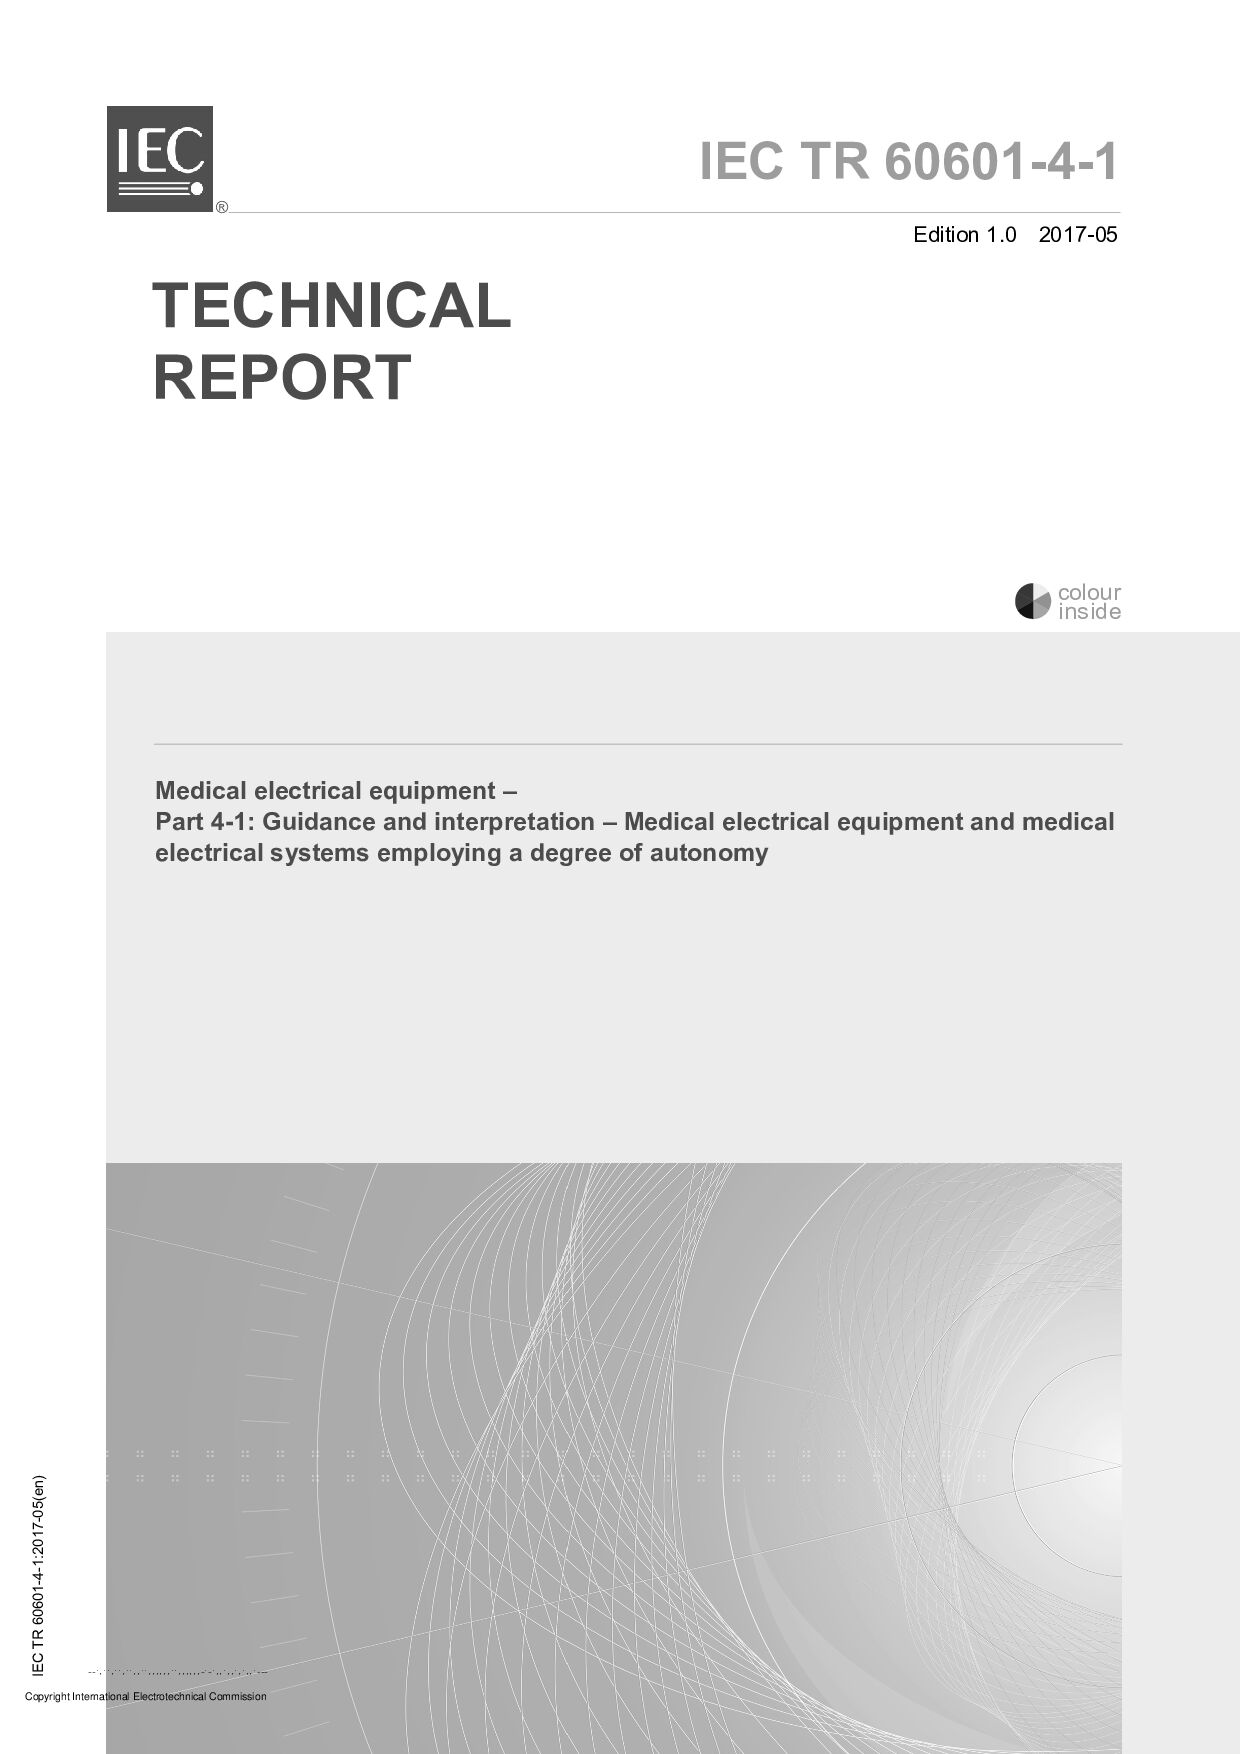 IEC/TR 60601-4-1:2017封面图